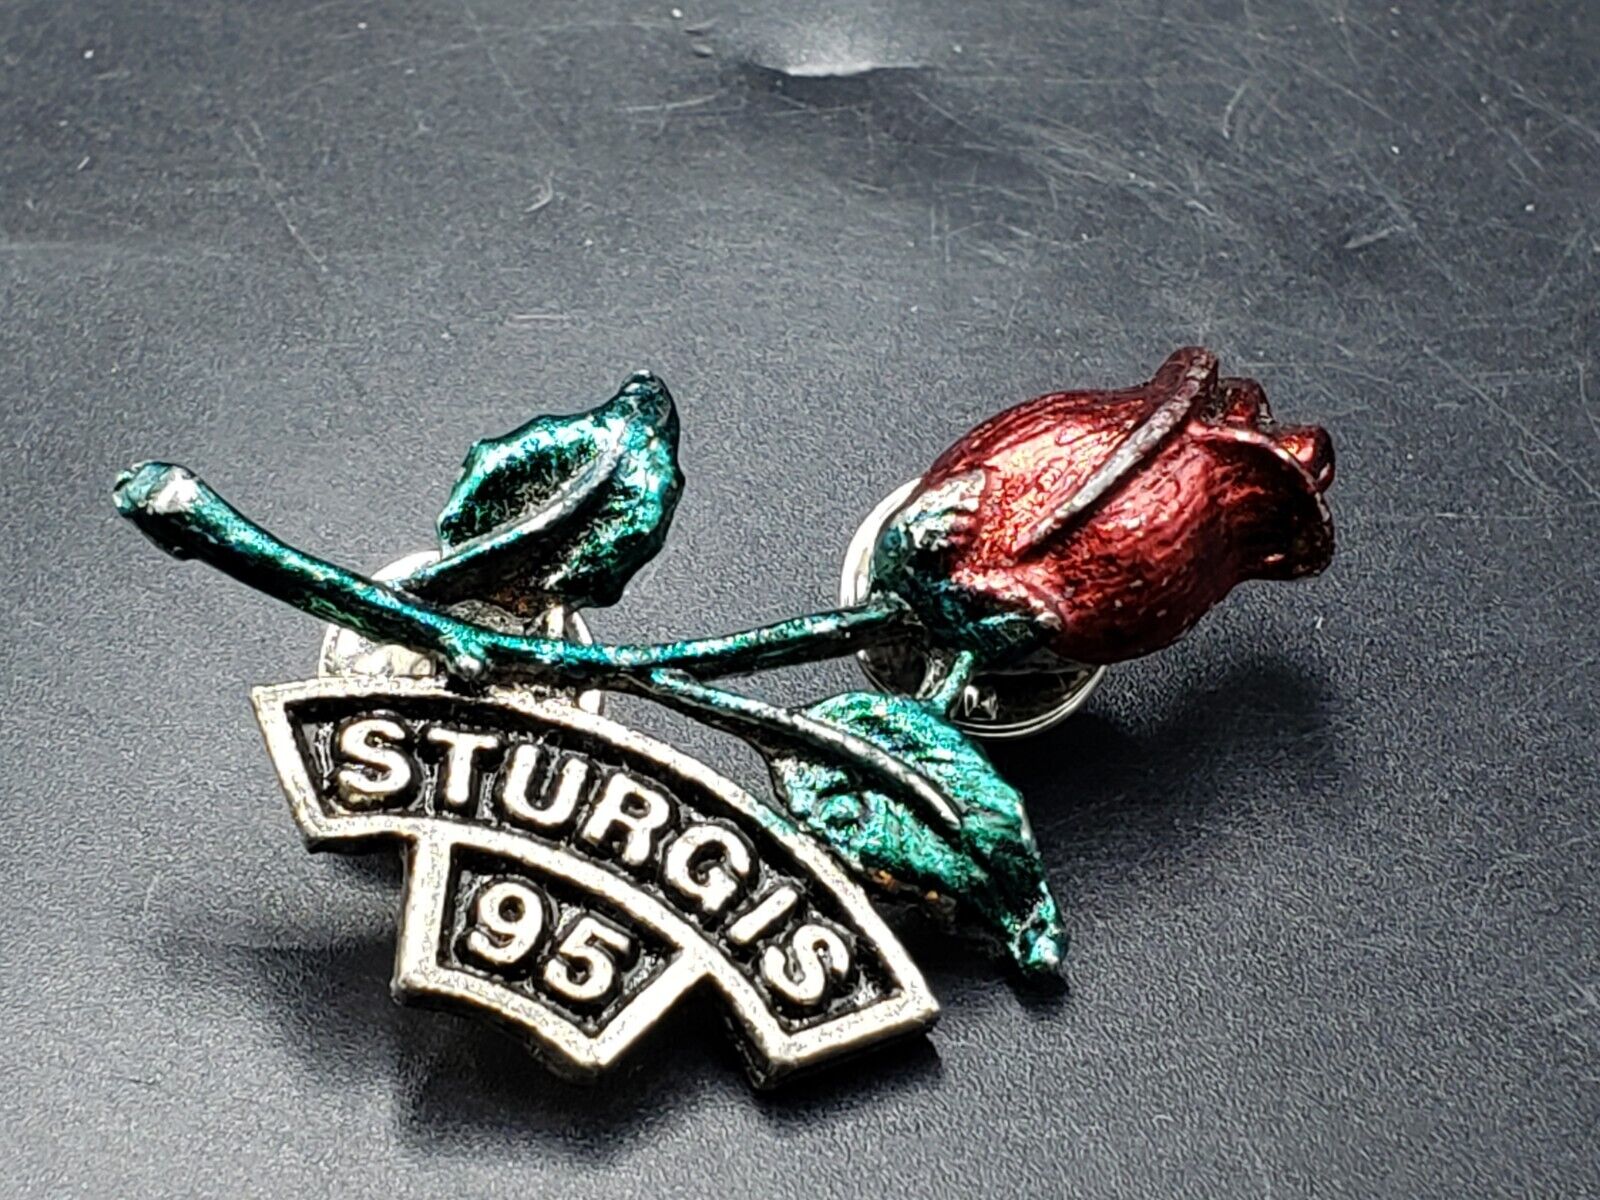 Vintage Sturgis Rose Pin; 1995